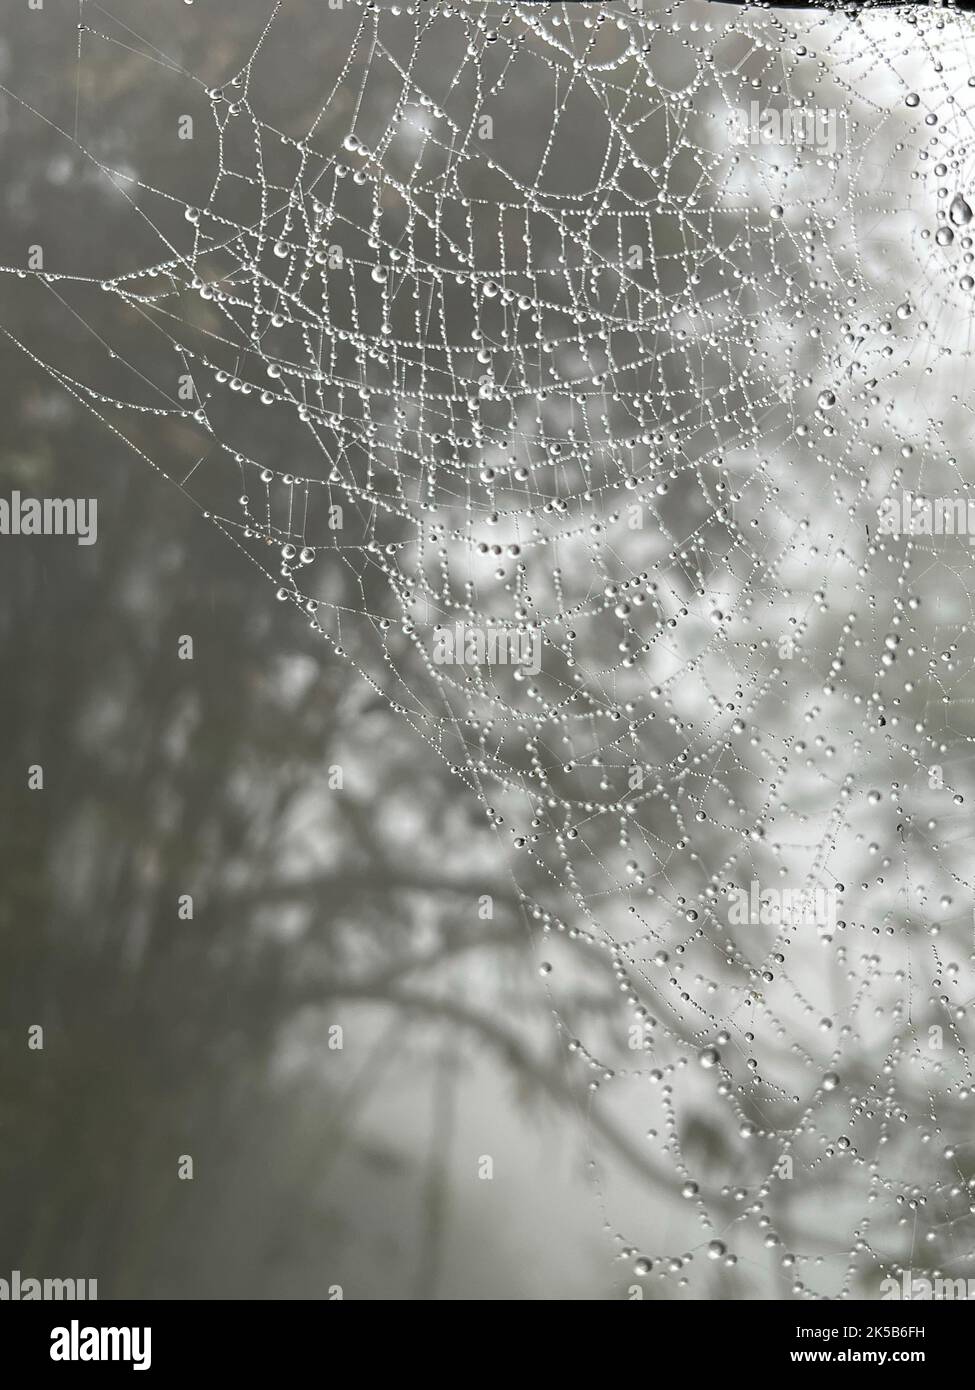 Un cliché en niveaux de gris de la toile d'une araignée avec des gouttes de pluie Banque D'Images